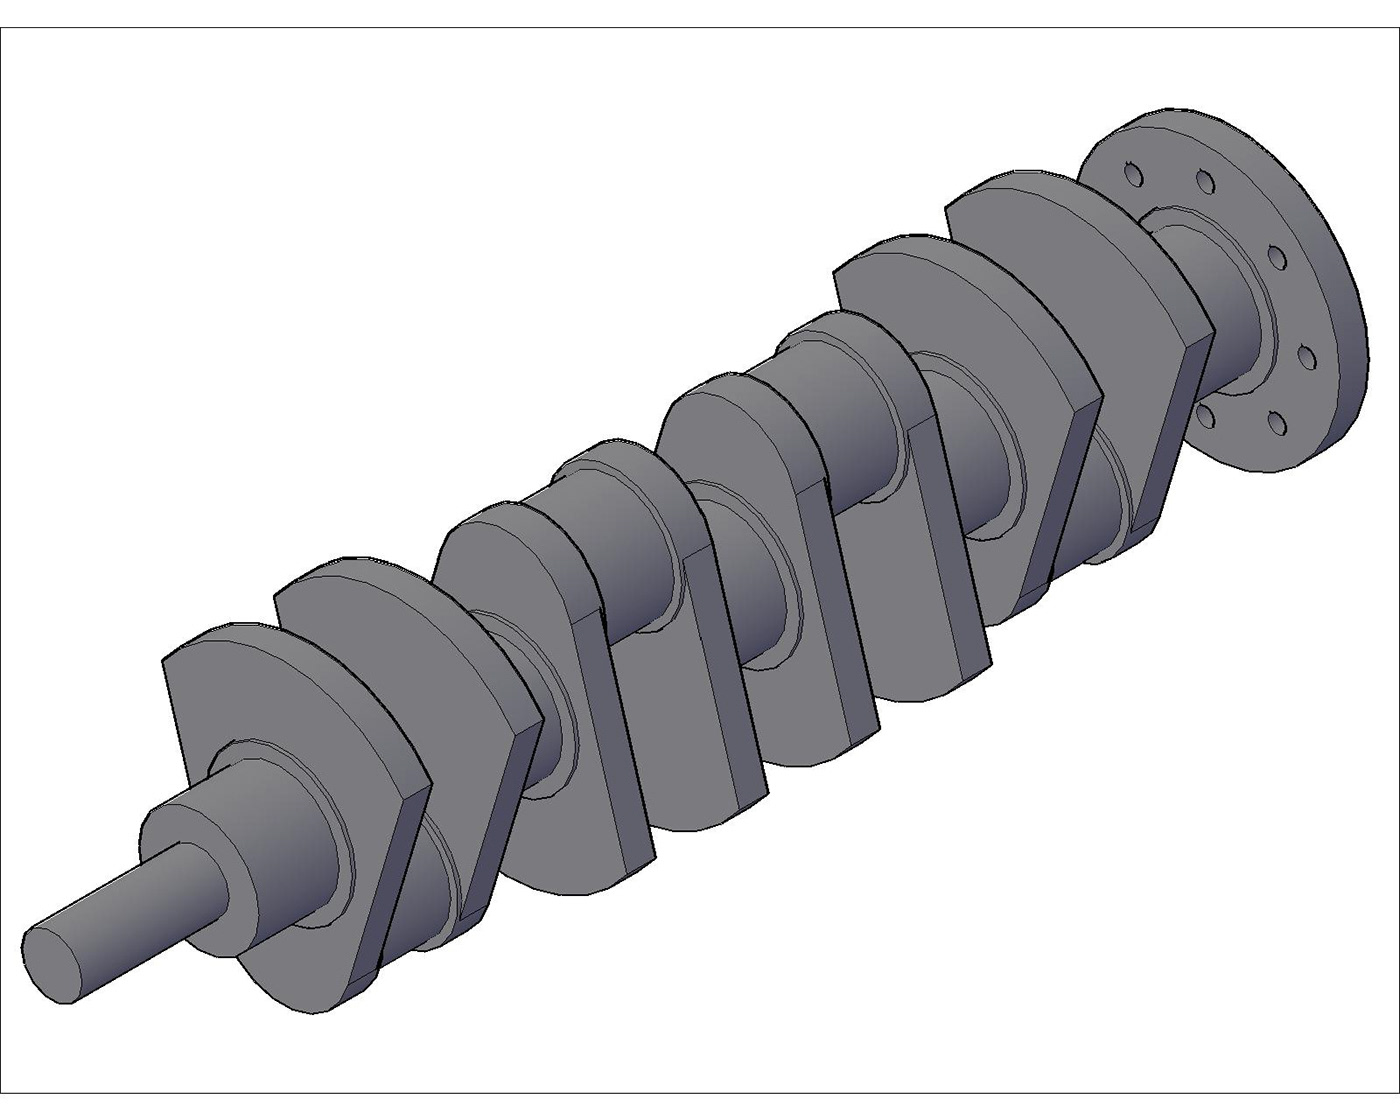 Automotive design product Render 3D